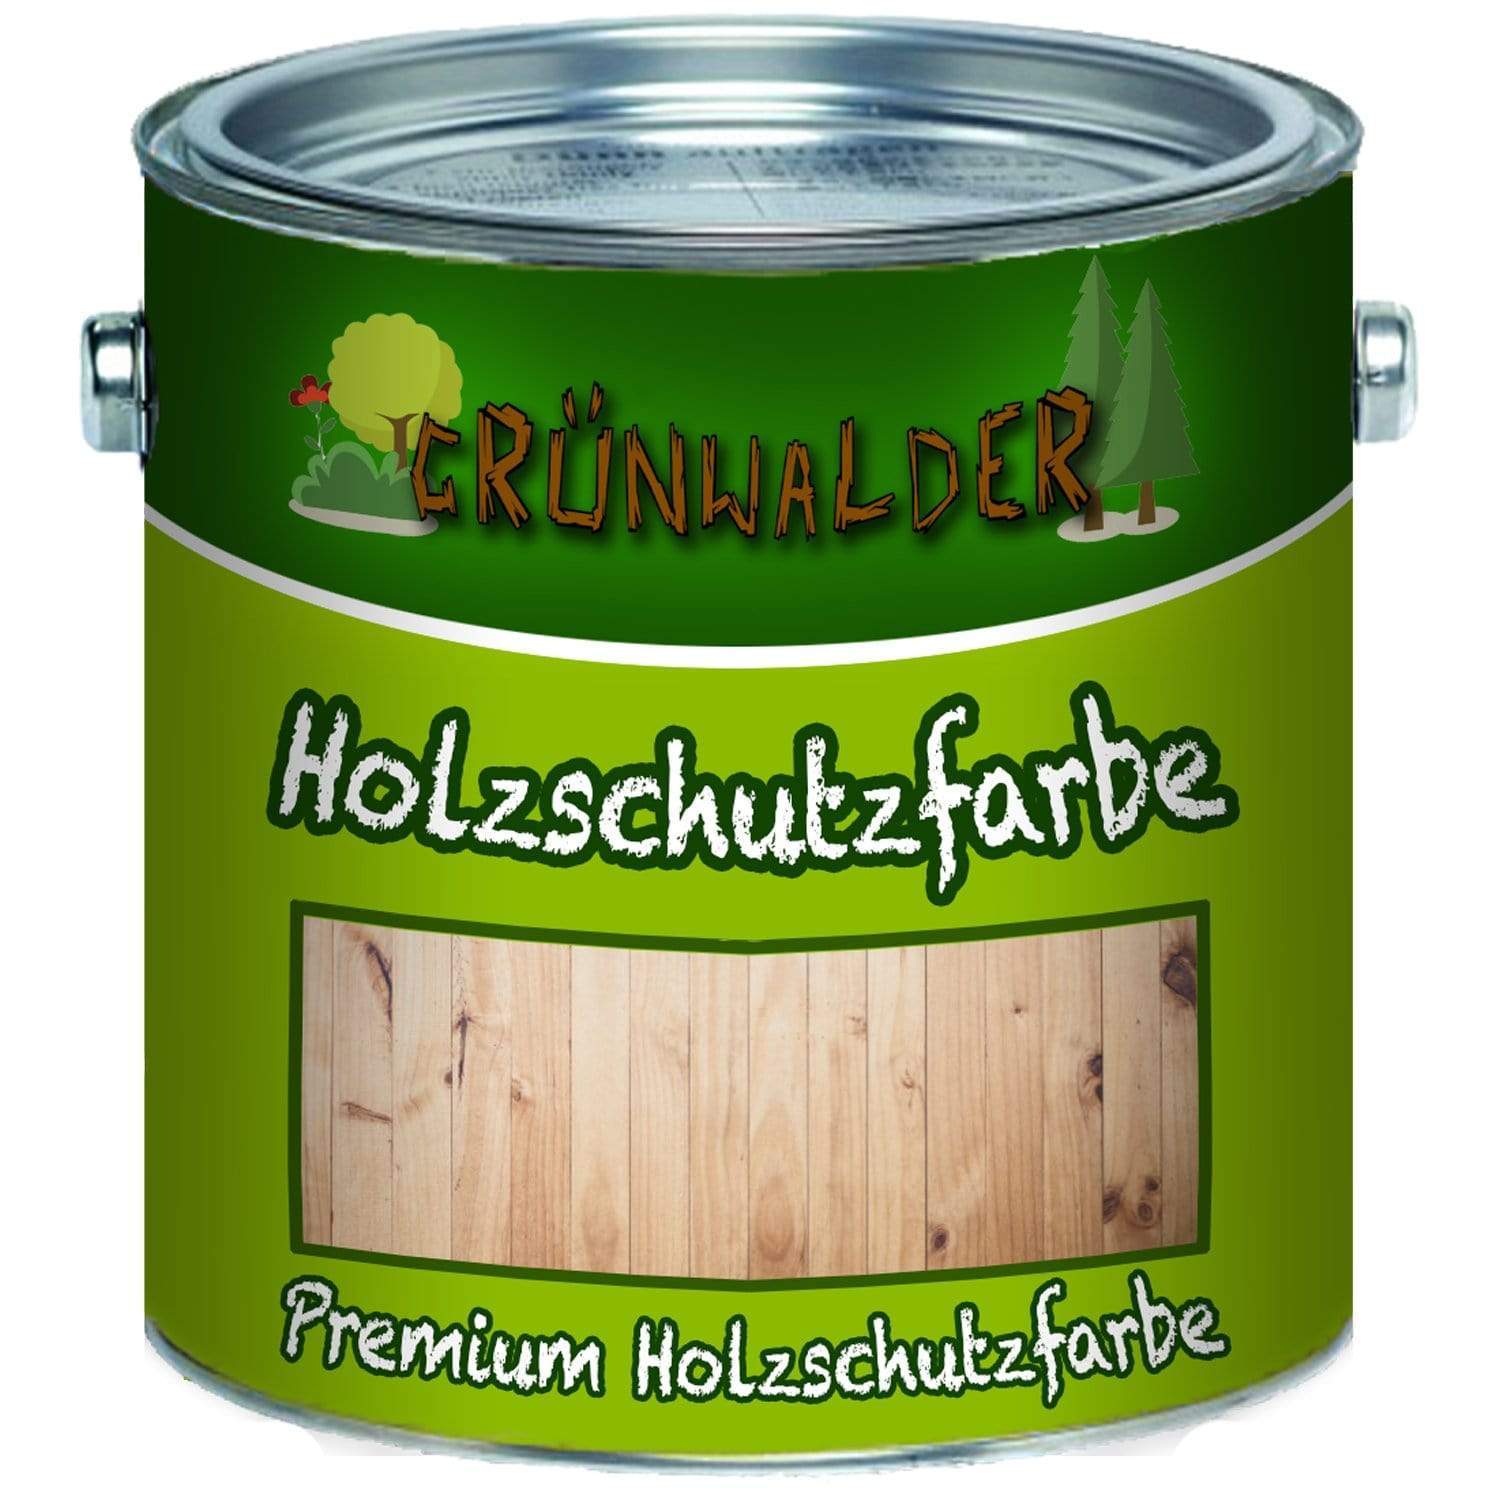 Grünwalder Holzschutzfarbe - aromatenfreier Holzschutz - FARBENLÖWE